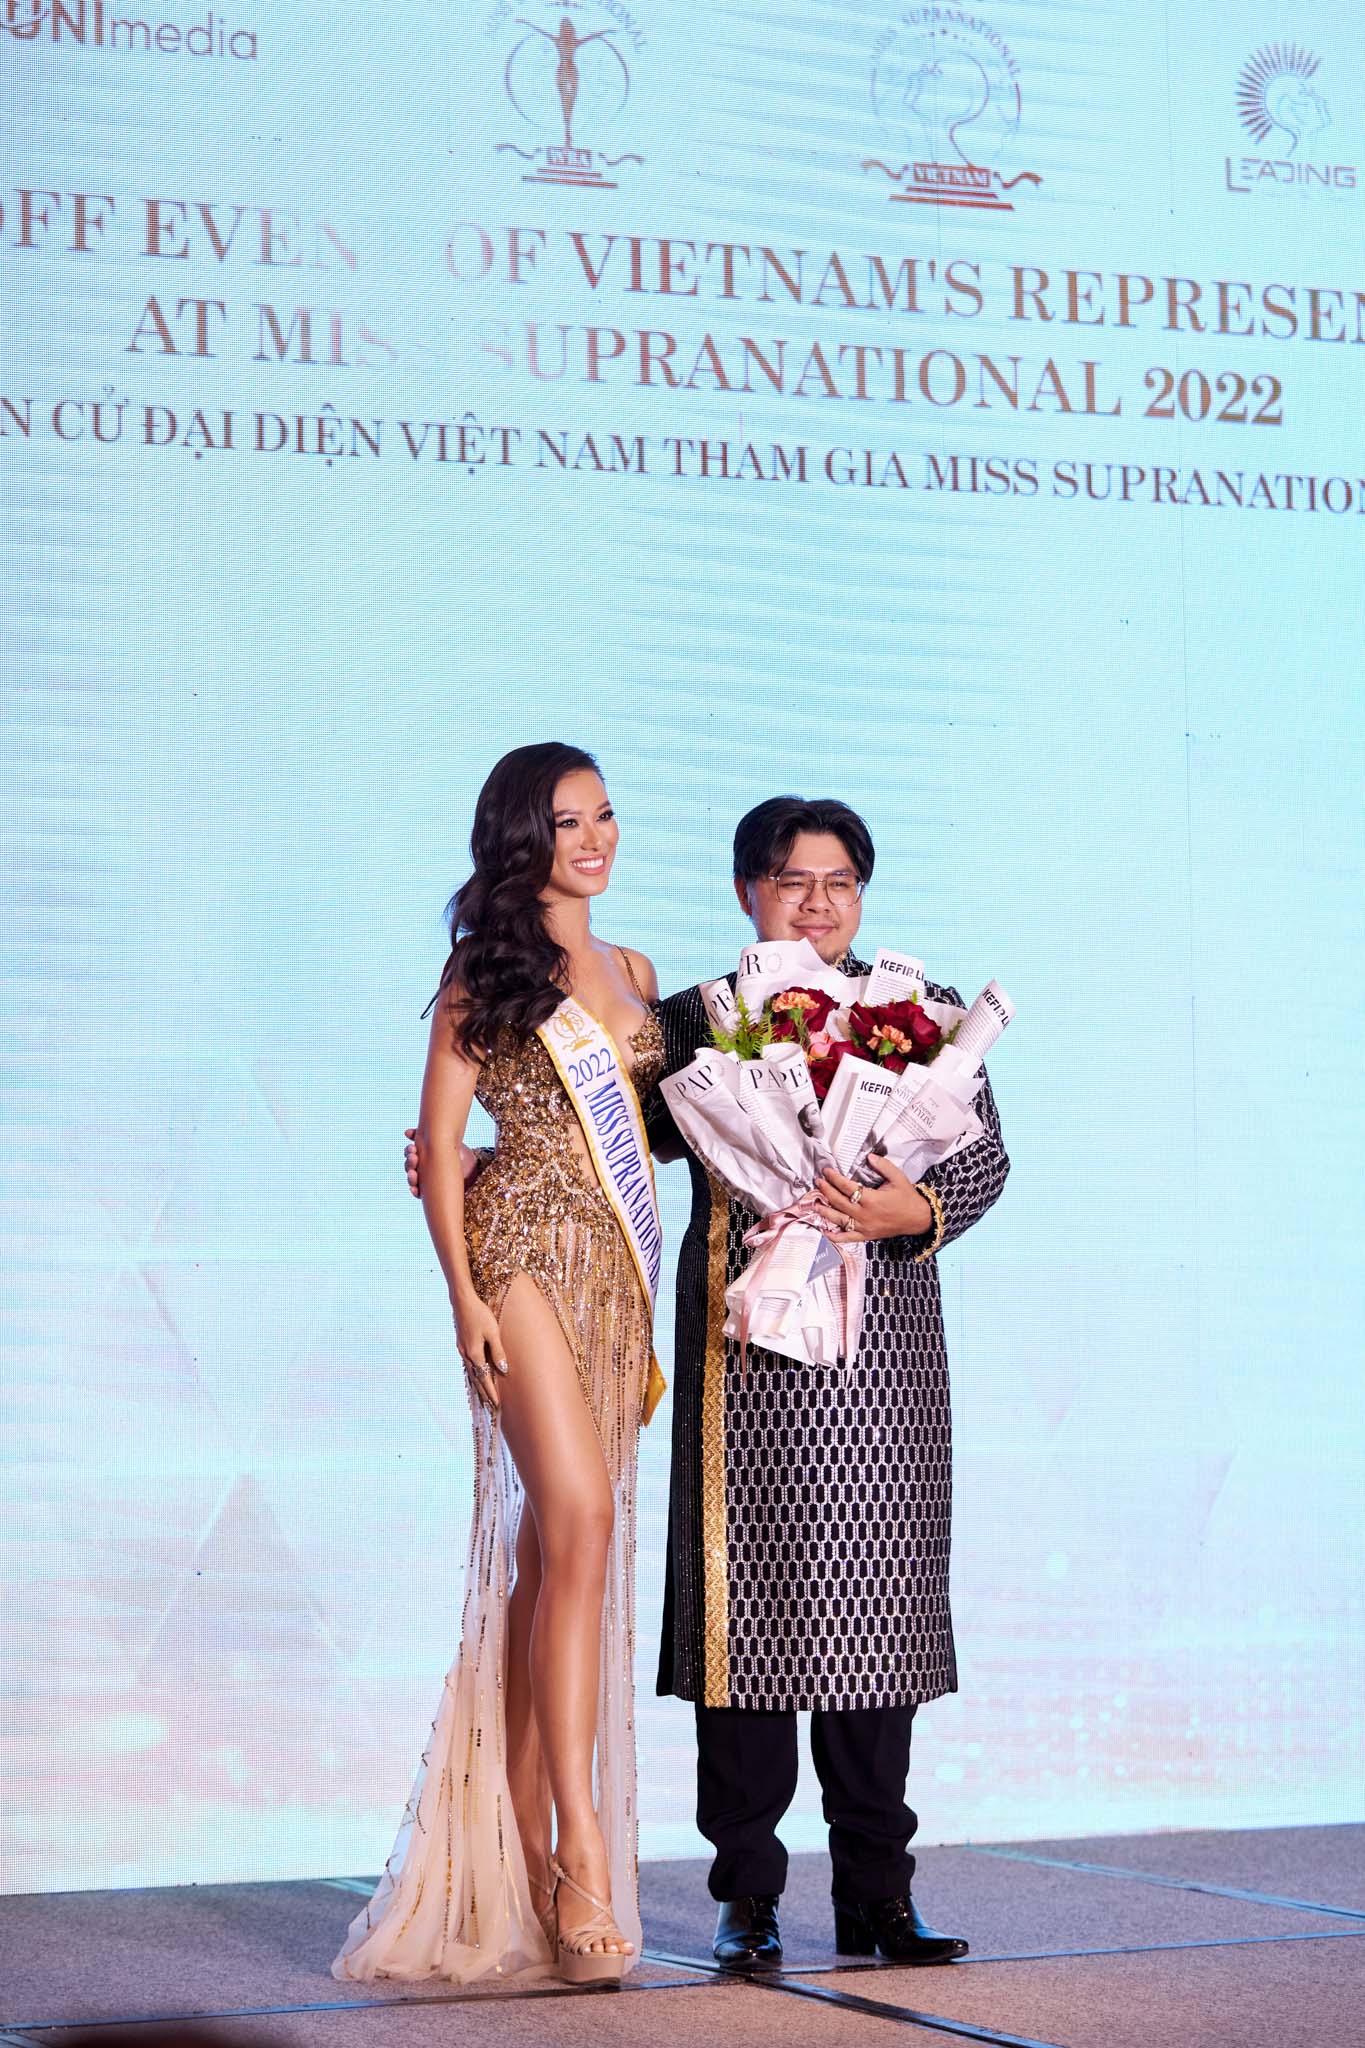 Á Hậu Kim Duyên đã sẵn sàng chinh phục vương miện Miss Supranational 2022 - ảnh 3